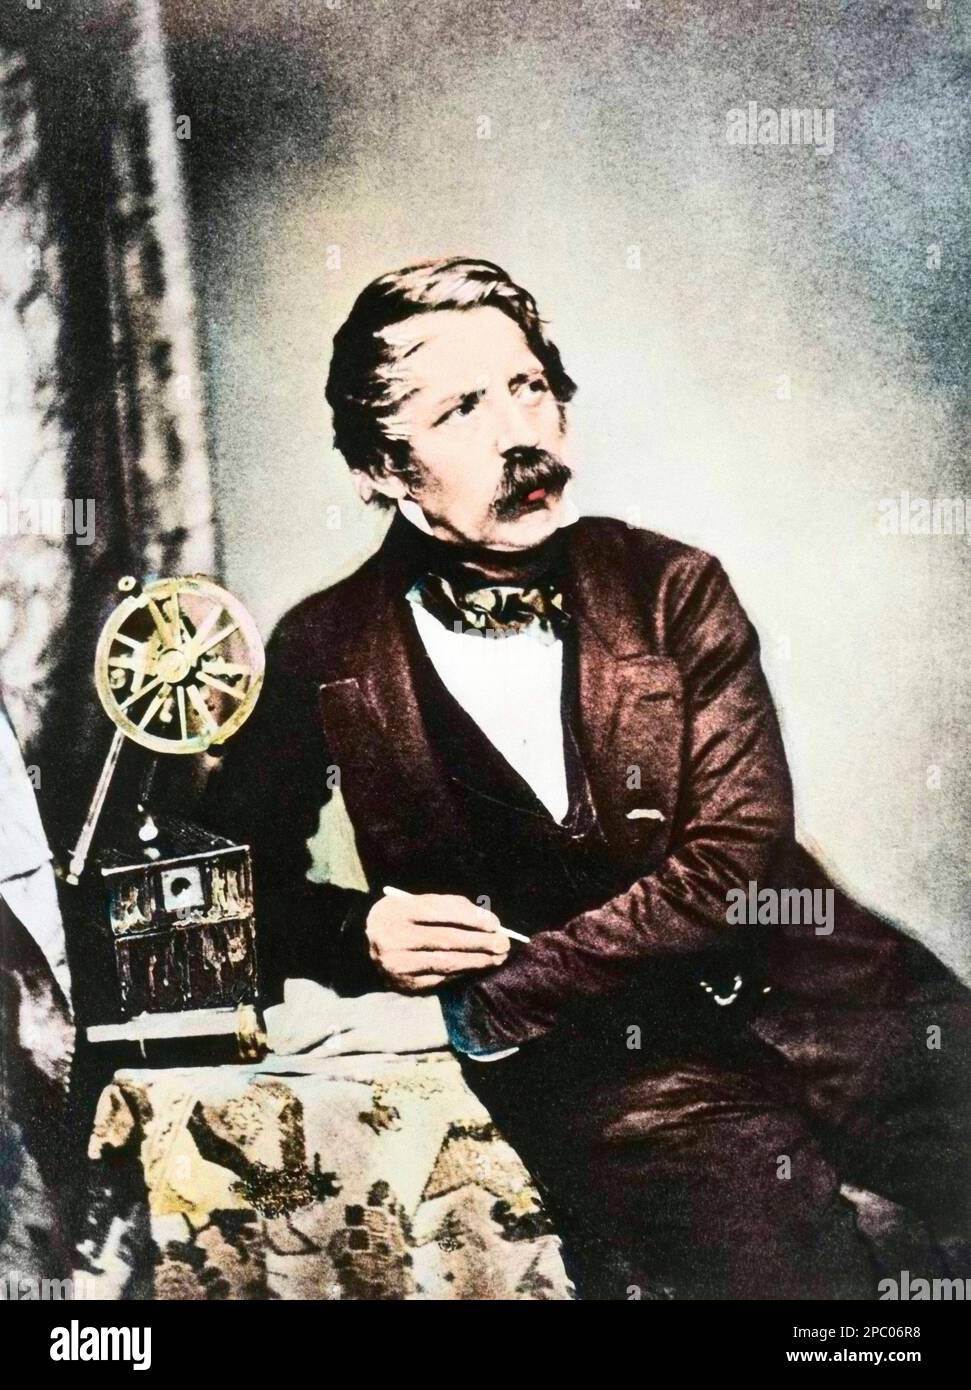 Carl August von Steinheil  German physicist and inventor - Carl (Karl) August von Steinheil (1801-1870). Physicien, mathematicien, opticien et astronome allemand. Stock Photo